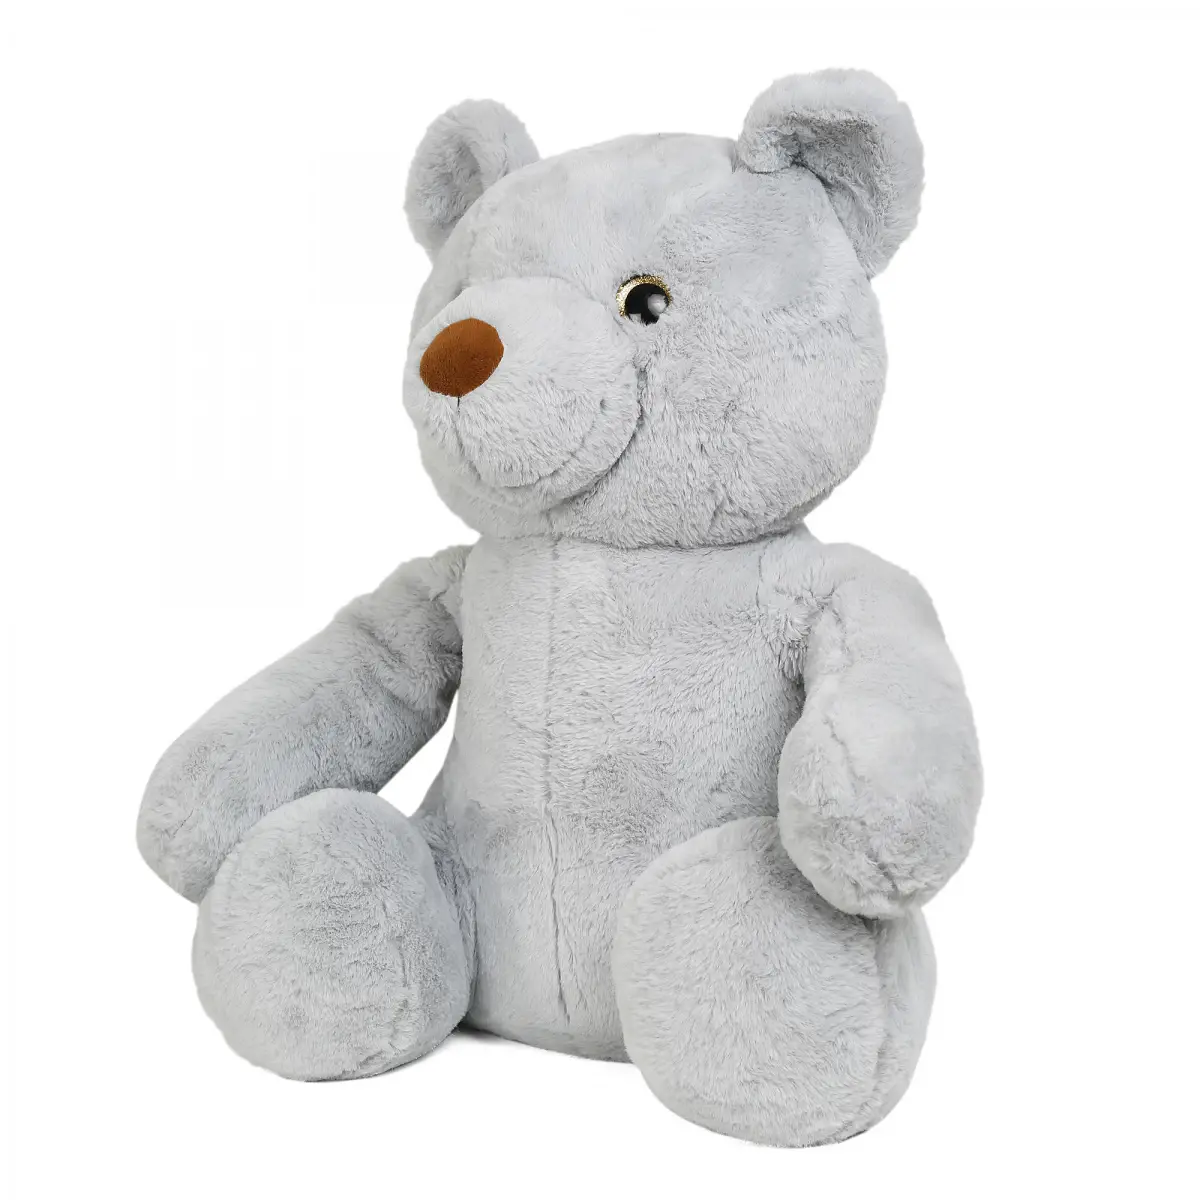 FuzzBuzz Plush Stuffed Bear Toy, Grey, 12M+